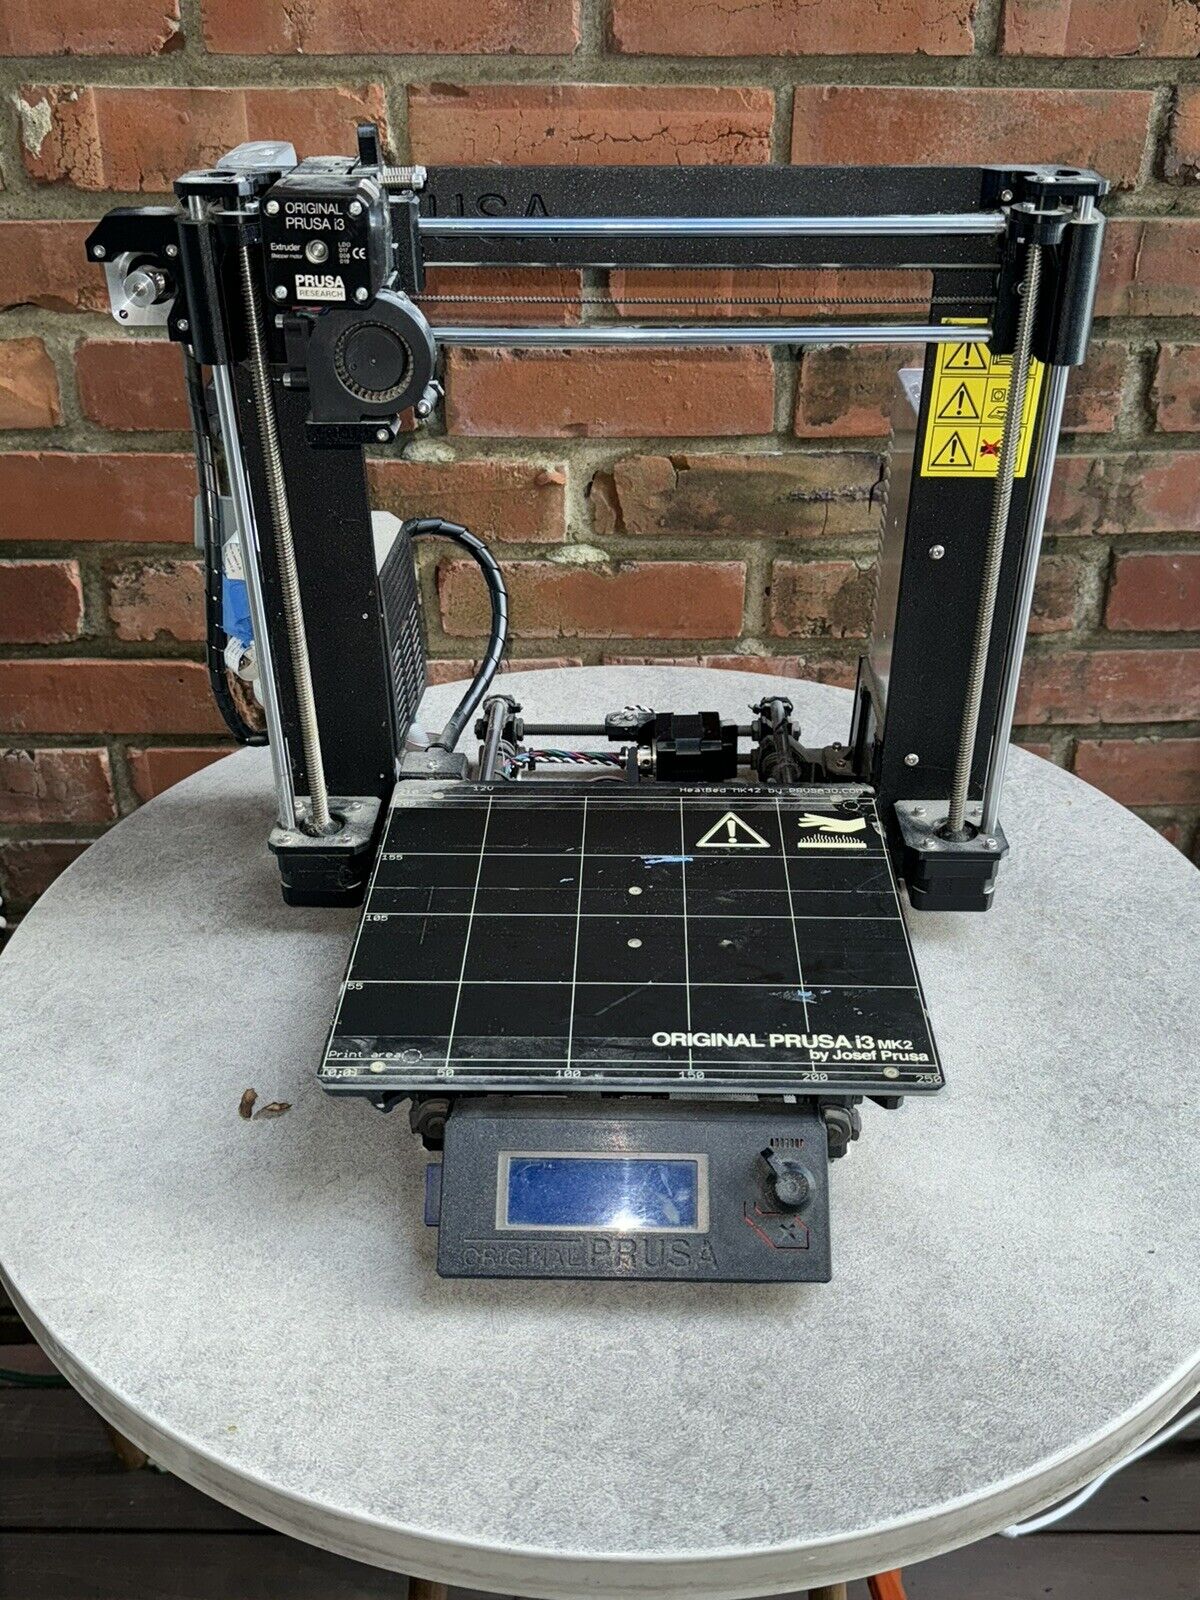 Original Prusa i3 MK2 Printer for Parts or Repair